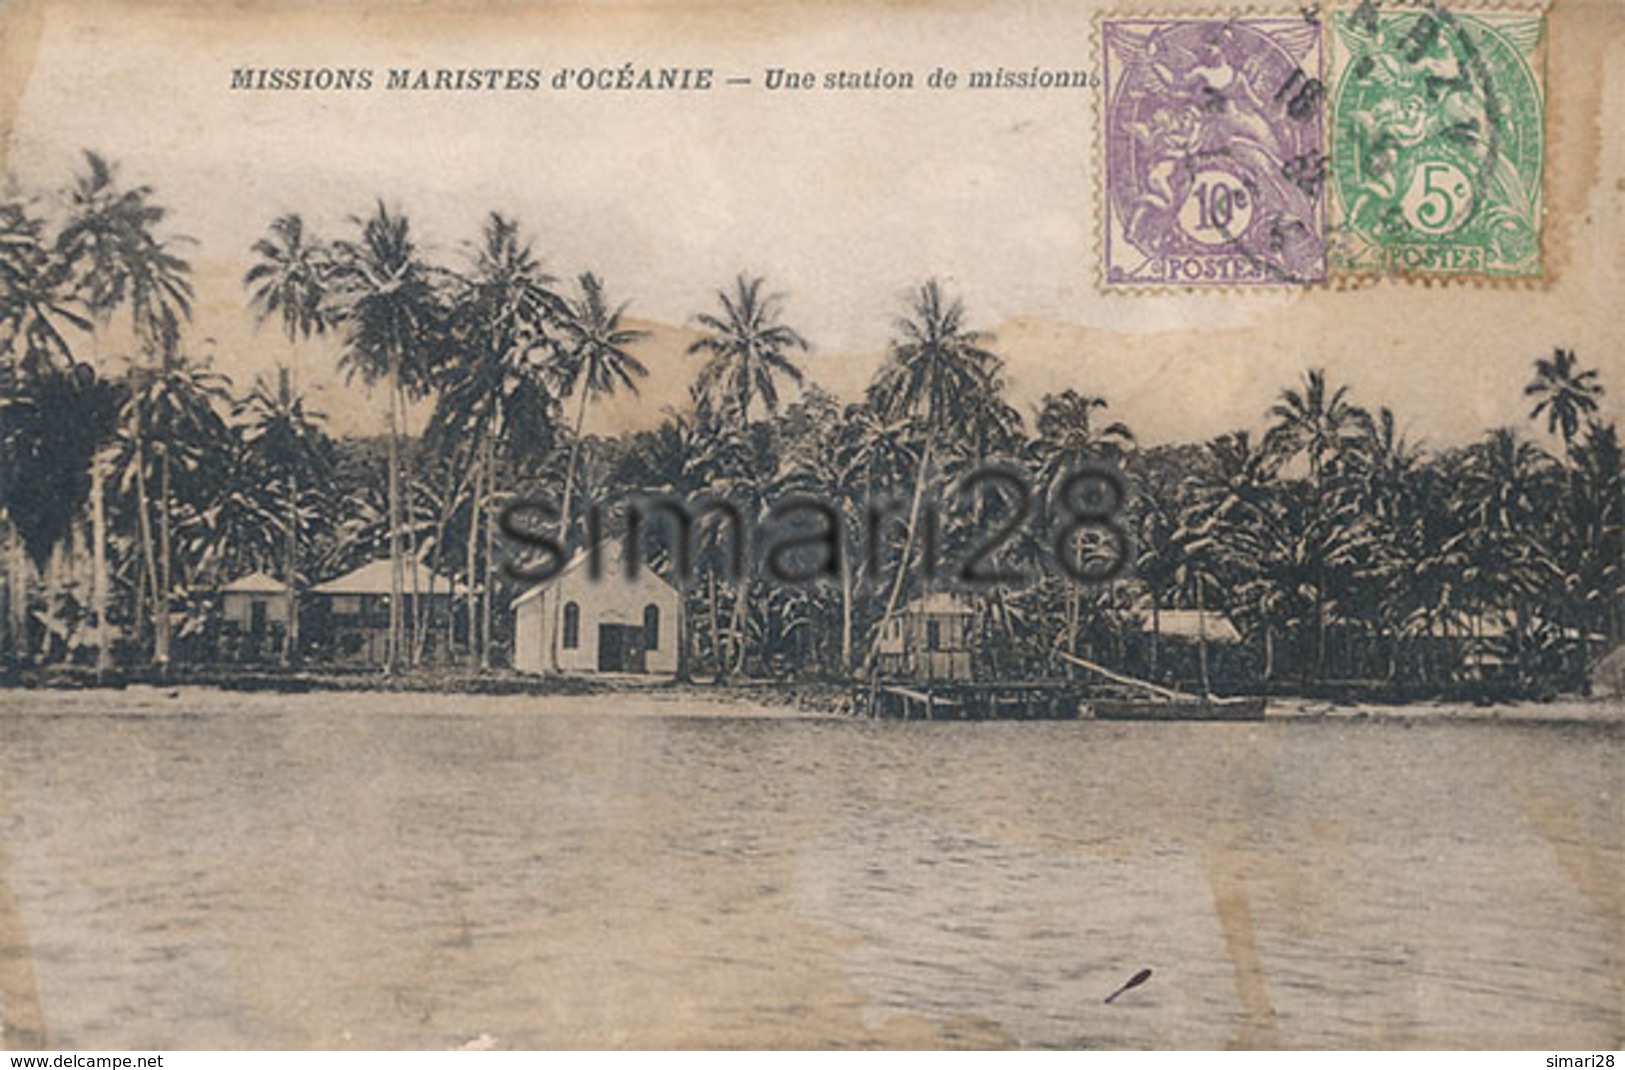 MISSIONS MARISTES D'OCEANIE - UNE STATION DE MISSIONNAIRES AUX SALOMON - Solomon Islands